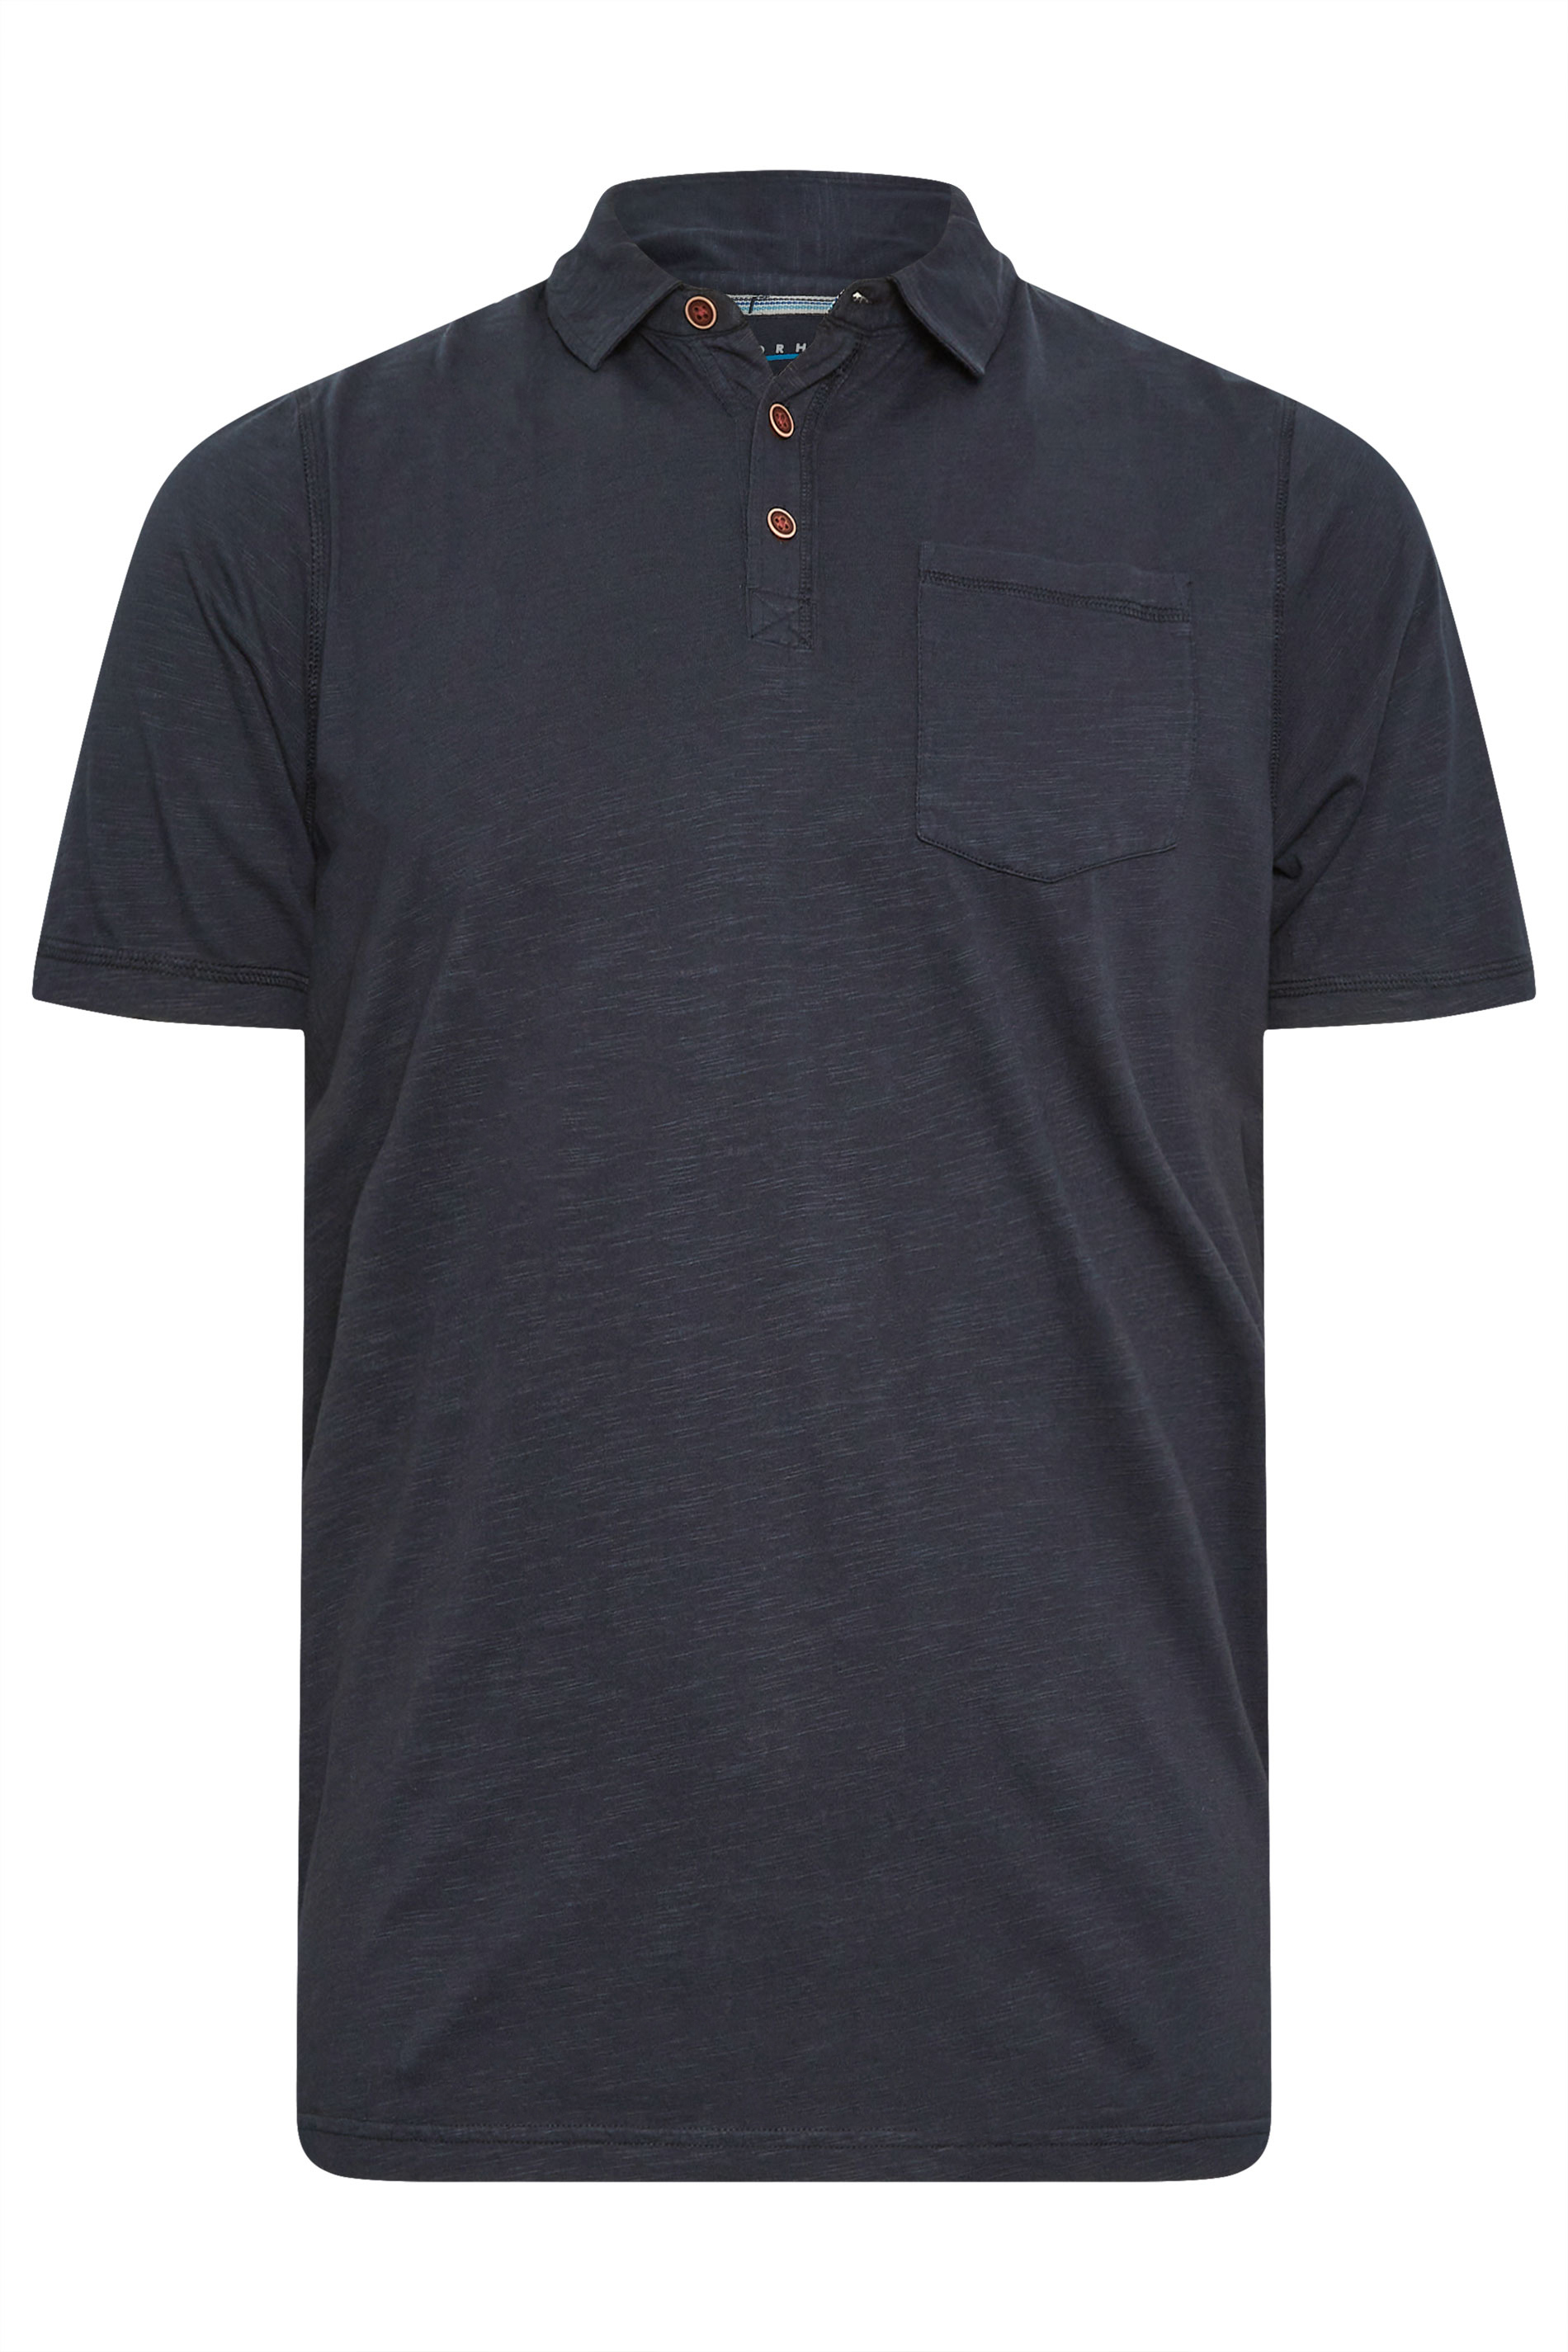 BadRhino Navy Blue Slub Polo Shirt | BadRhino 2